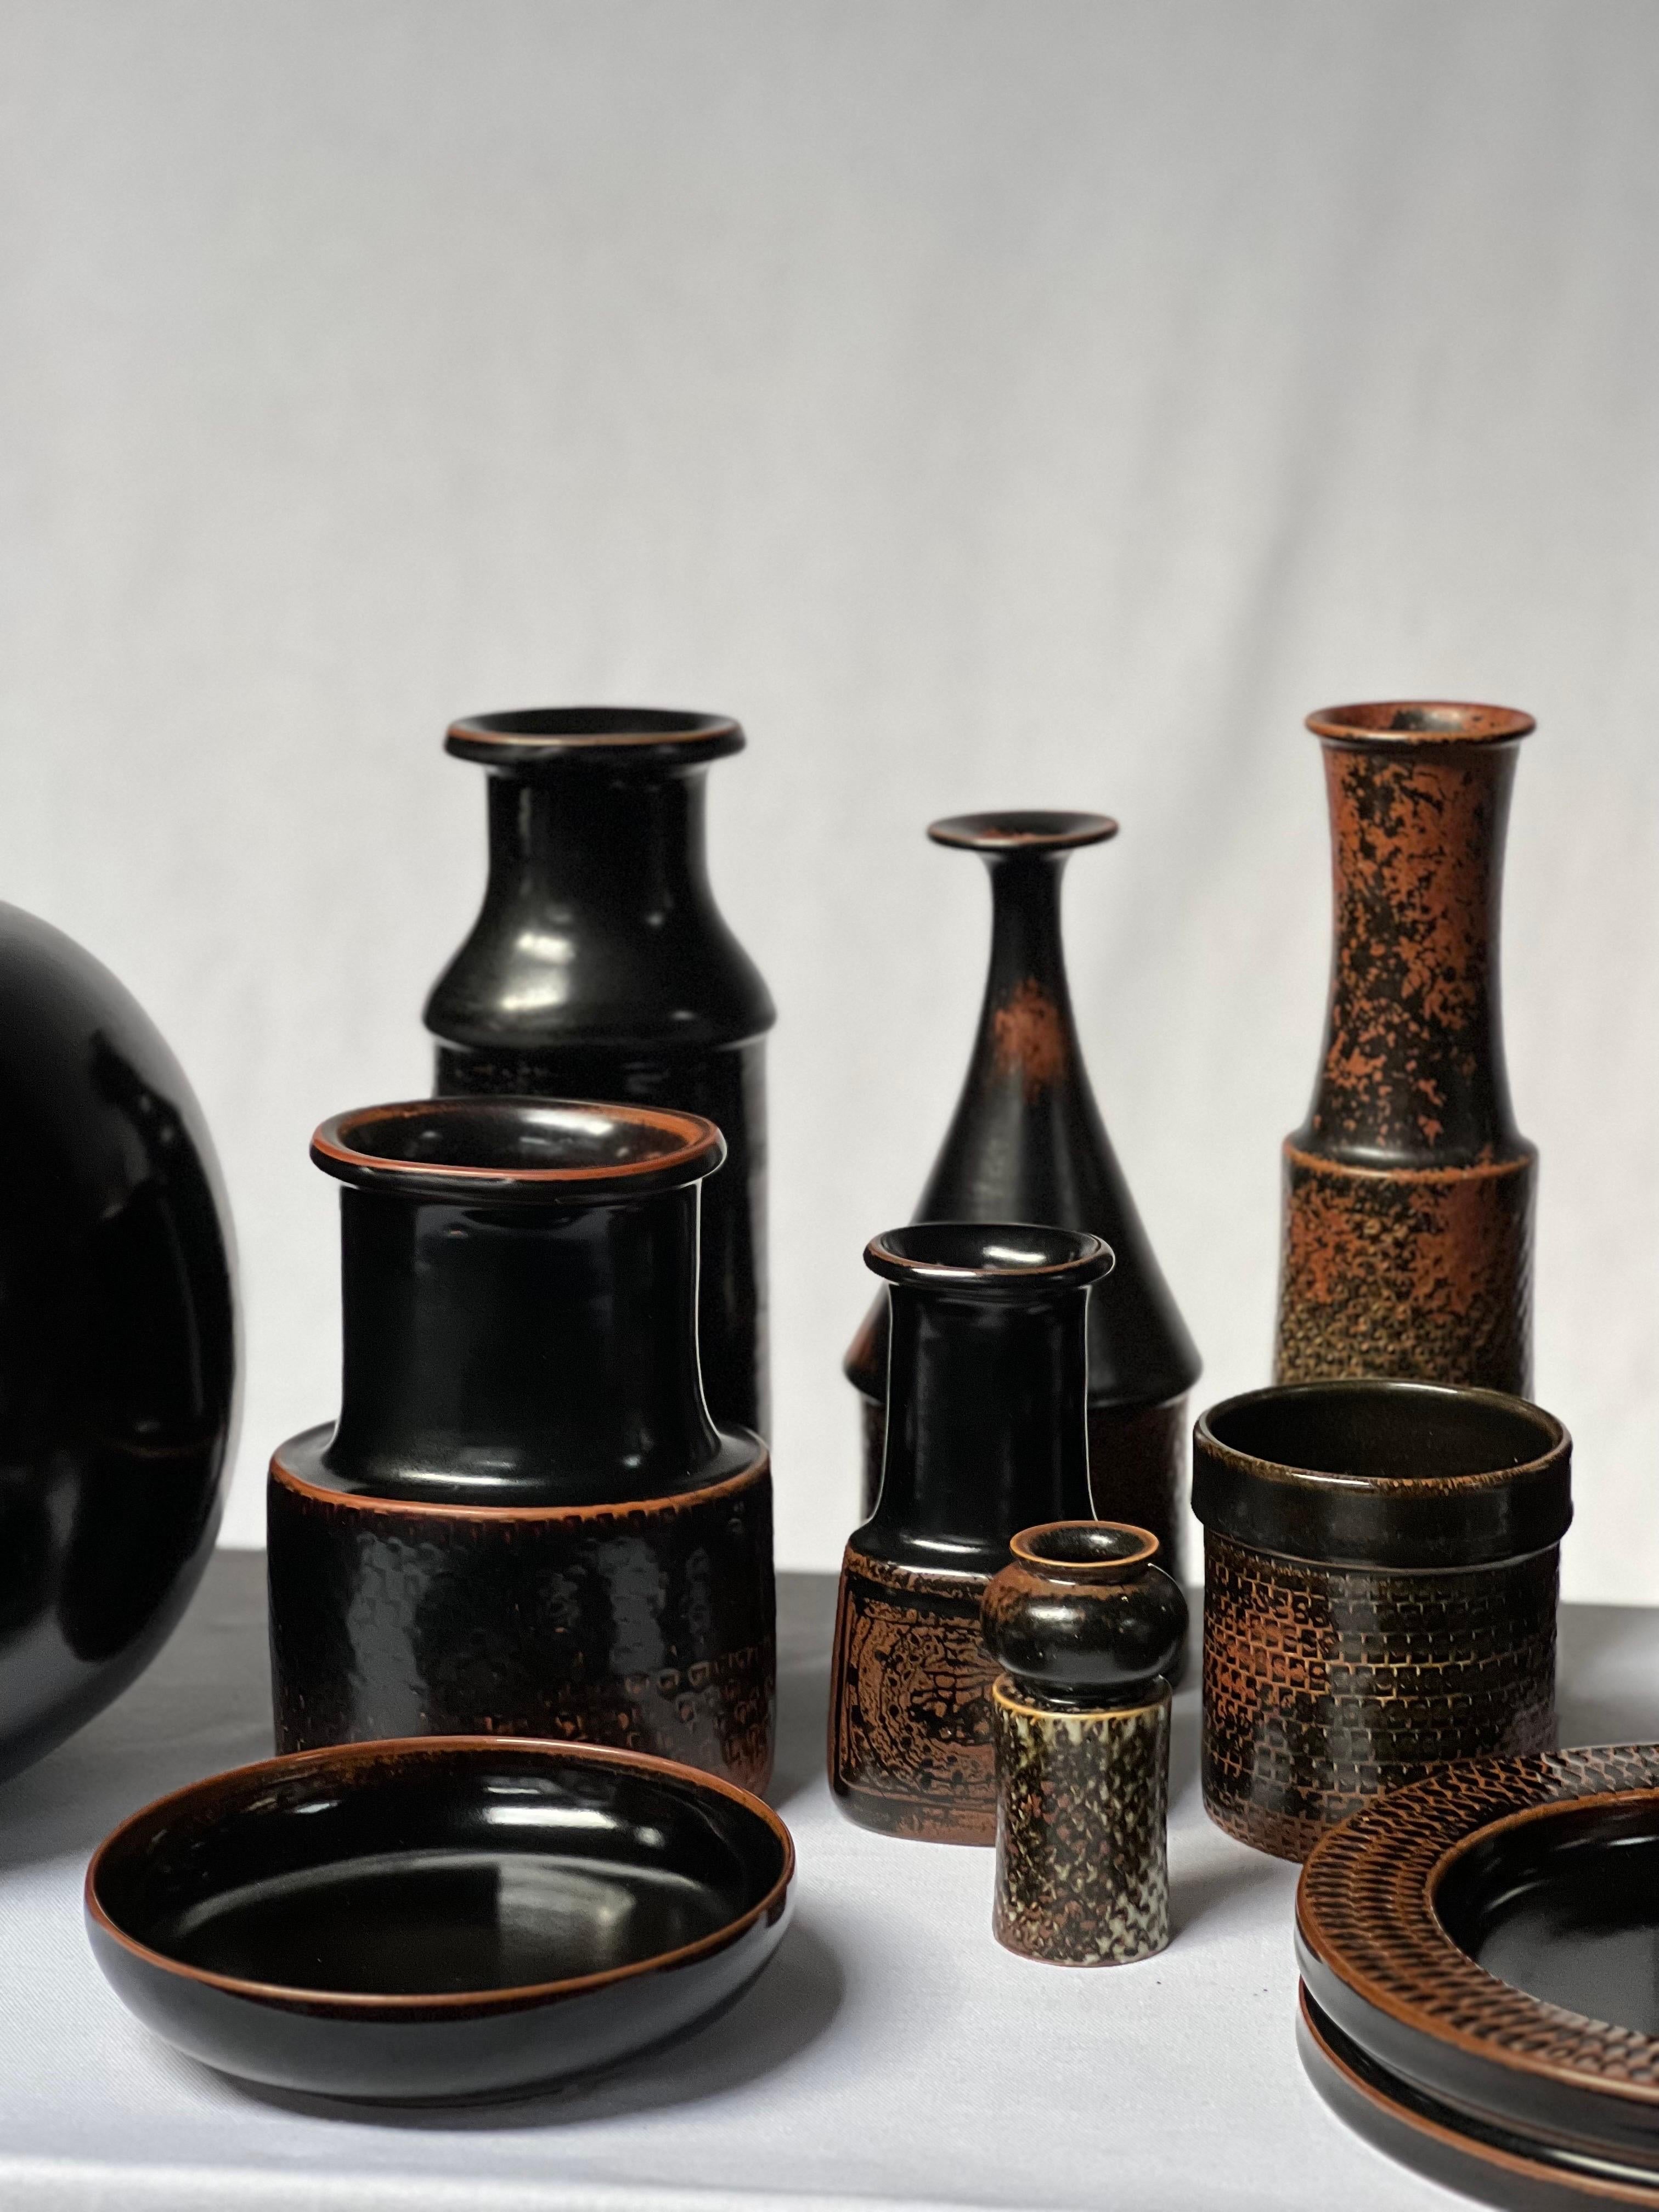 Stig Lindberg Unique Vase in black Glaze Tenmoku Made by Hand Sweden 1964 For Sale 2